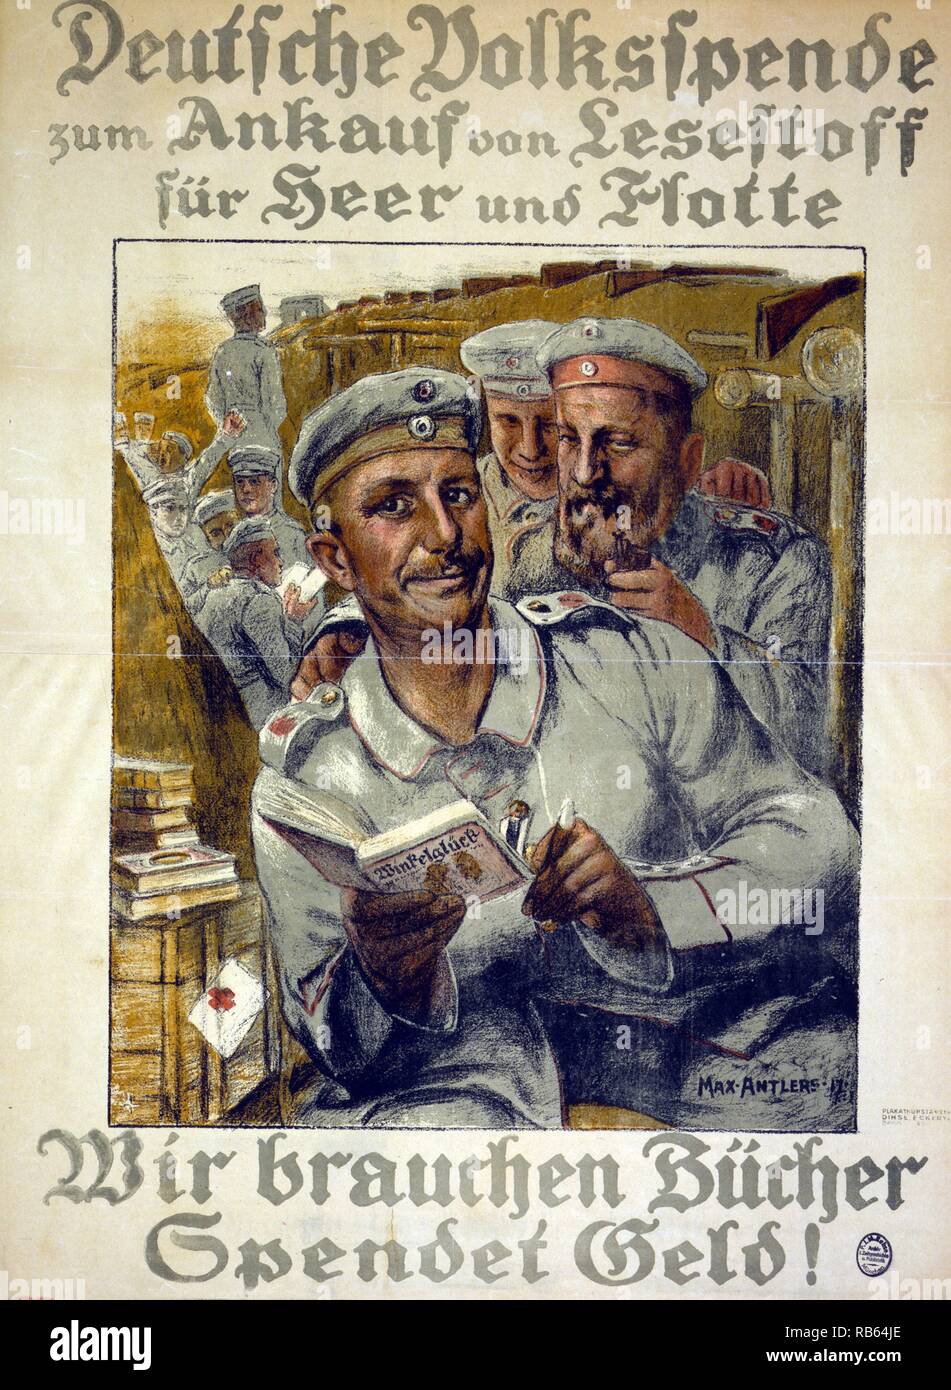 Poster tedesco mostra i soldati la lettura di libri in una trincea. Traduzione del testo - 'Donations per acquistare materiale di lettura per l'esercito e della Marina - abbiamo bisogno di libri, di donare denaro!". Databile intorno al 1910-1920 Foto Stock